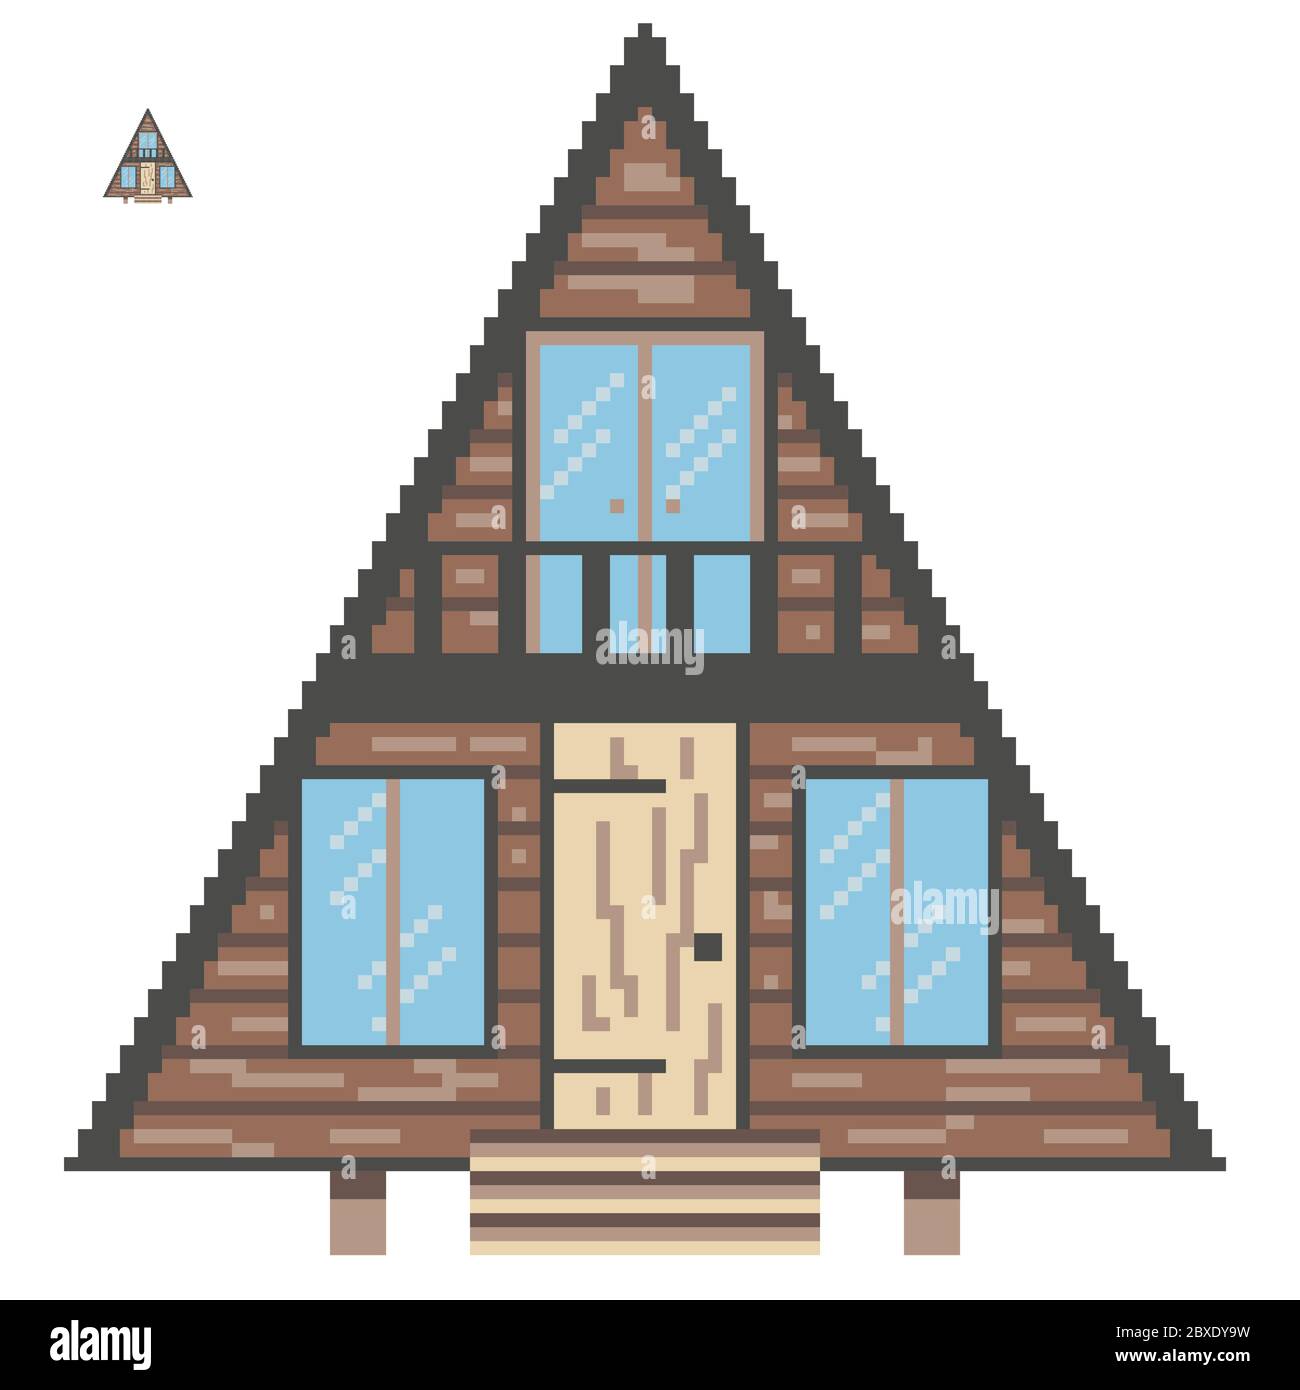 8 Bit, Arcade-Stil, Pixel House. Retro-Design für Spiele. Stock Vektor